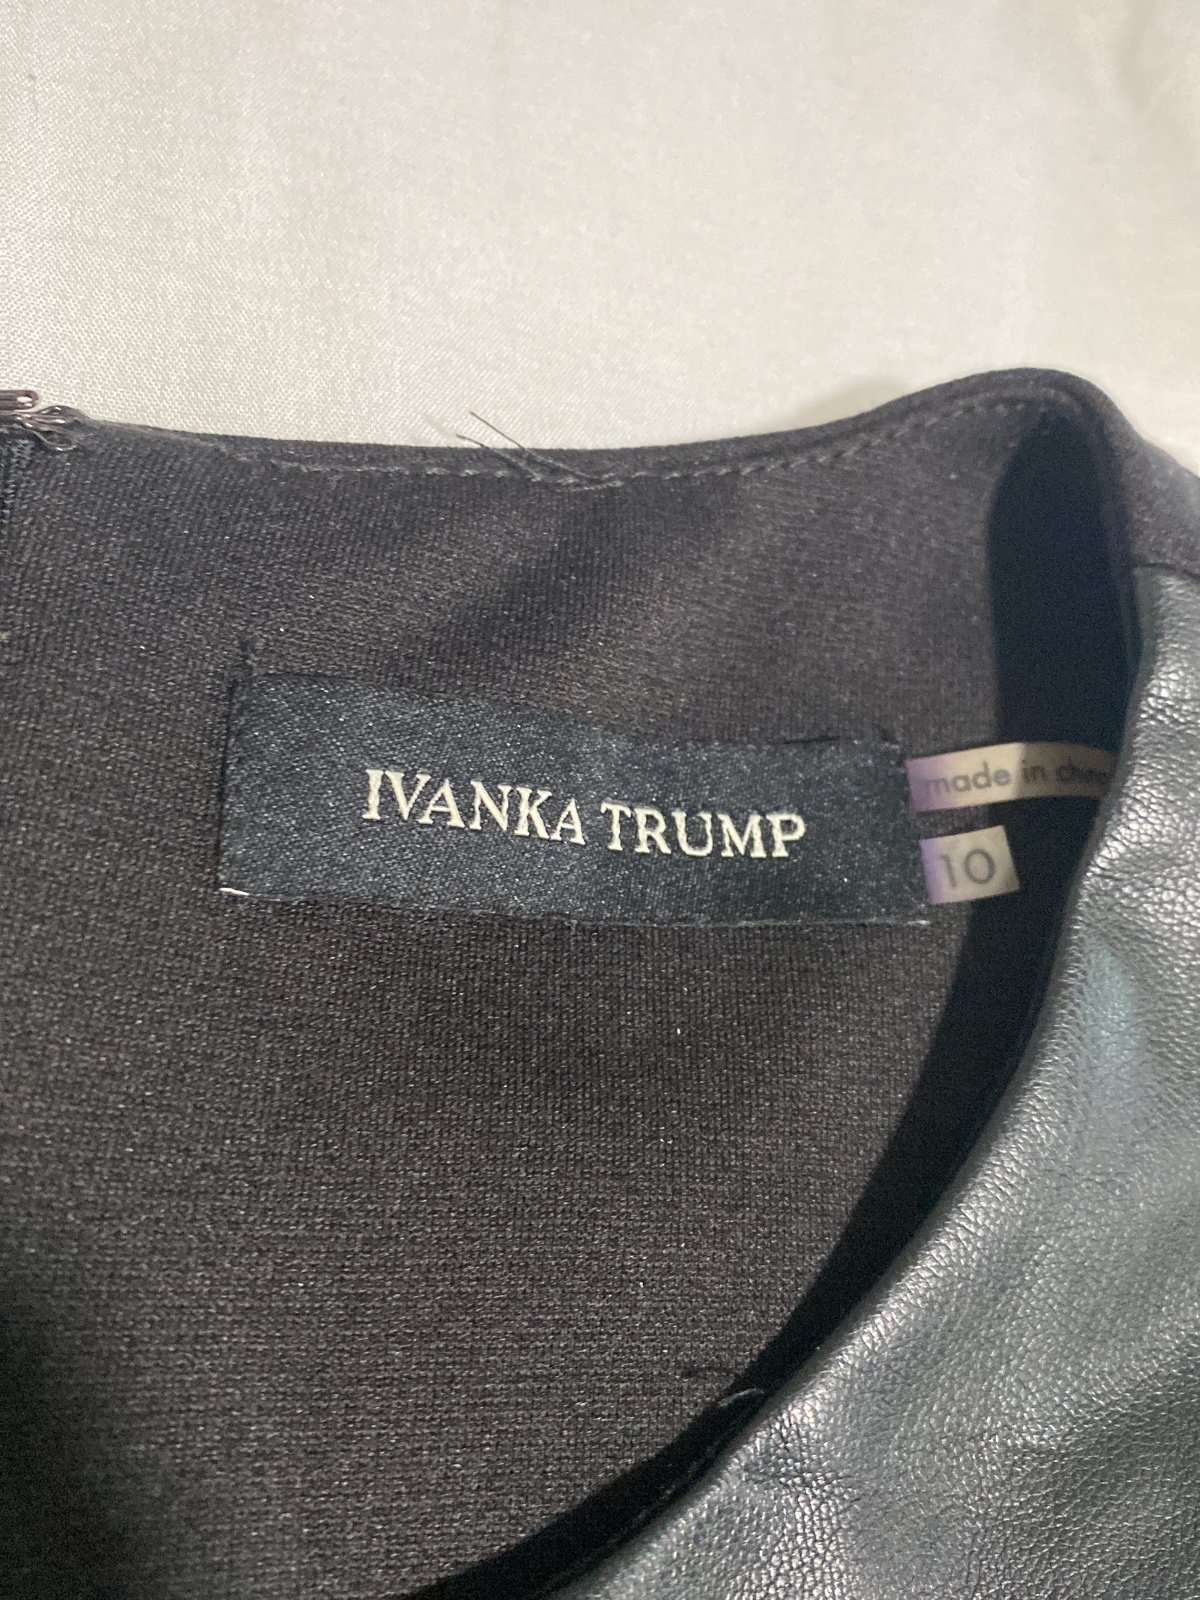 Classic Ivanka Trump Dress k2sm6GUQB High Quaity